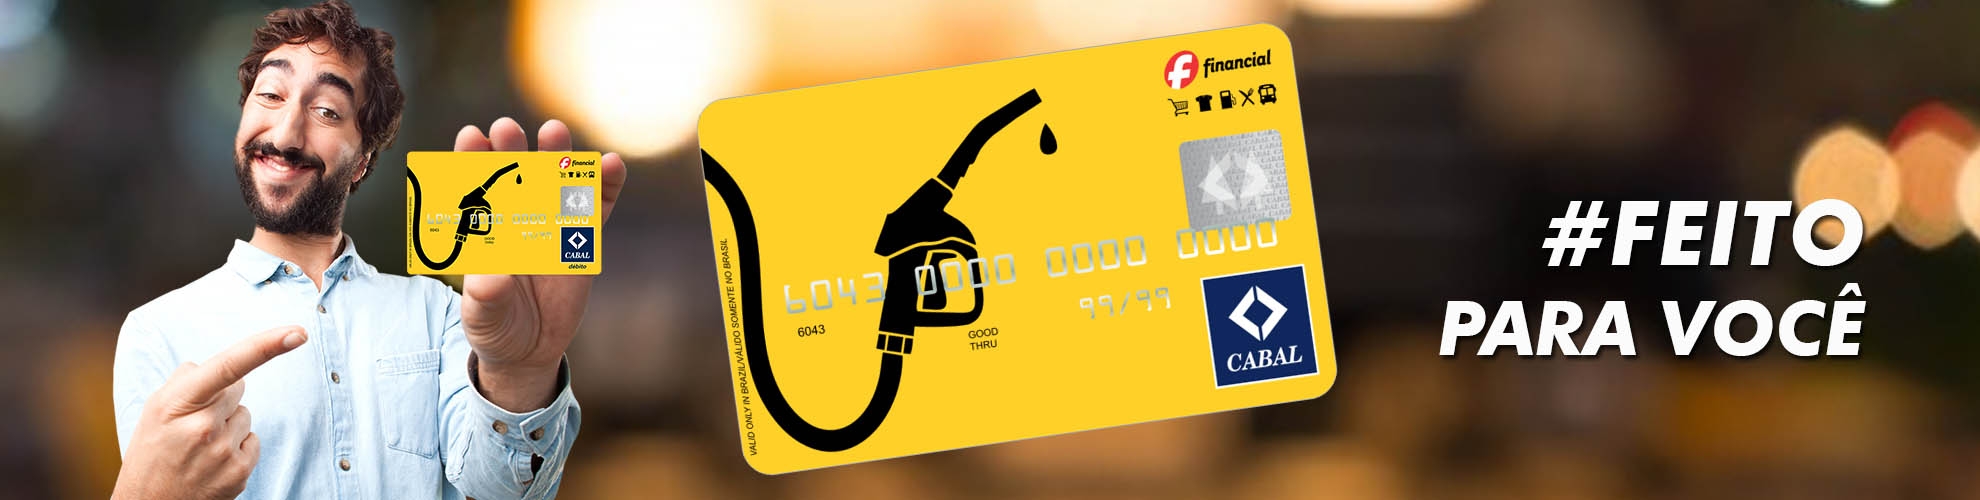 Cartão Combustível - Crédito